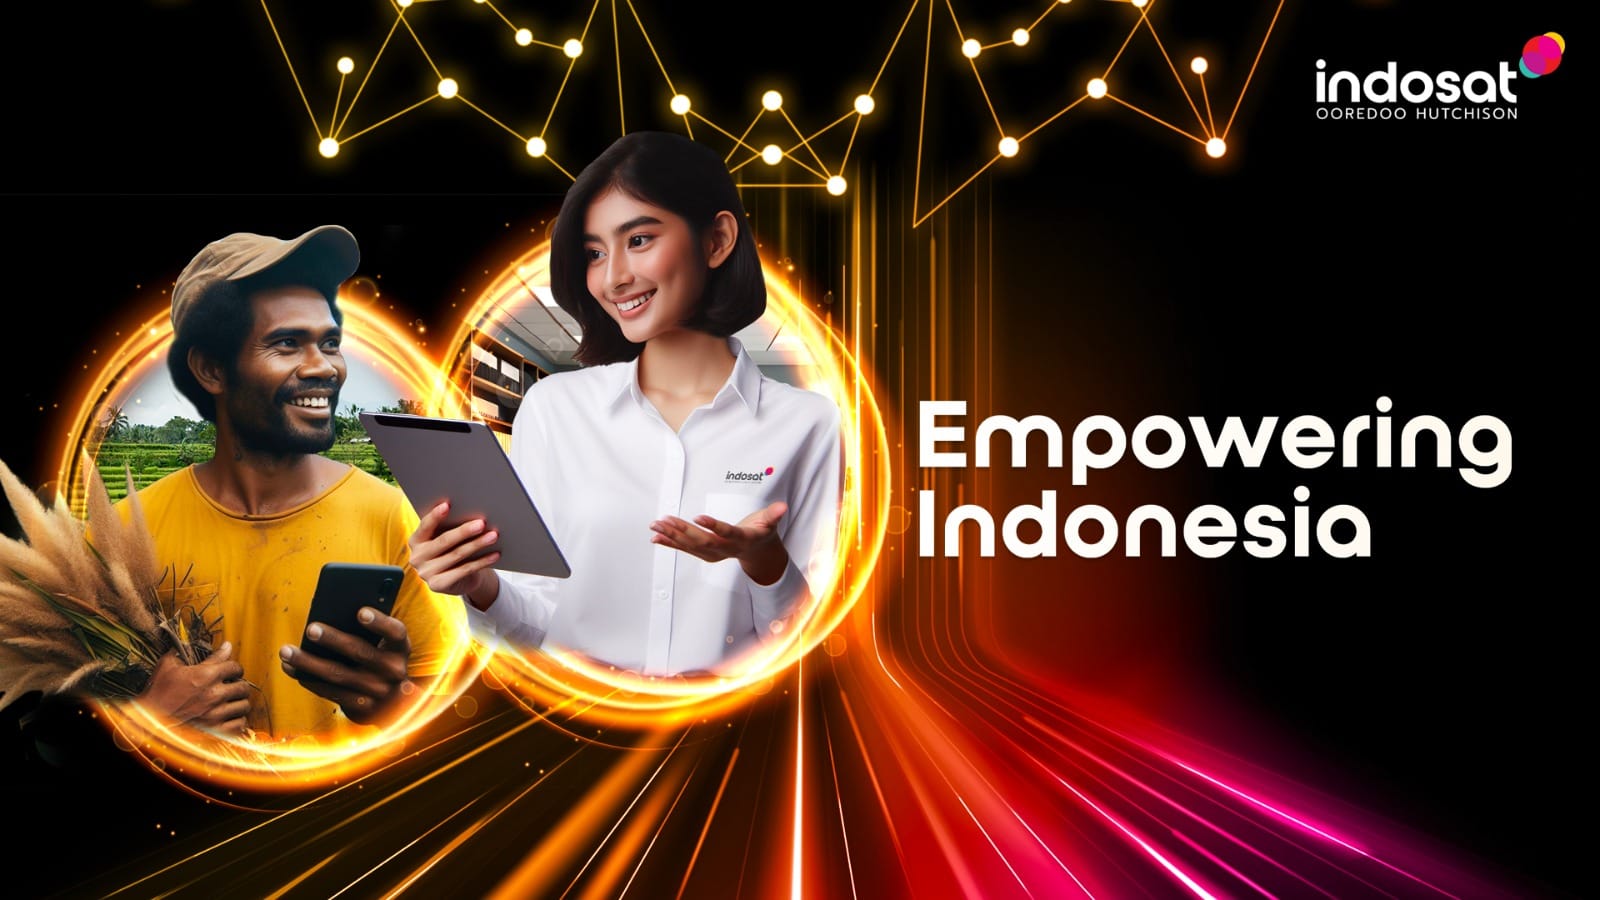 Indosat Ooredoo Hutchison (ISAT) Catat Pertumbuhan yang Solid Di Seluruh Lini Bisnis